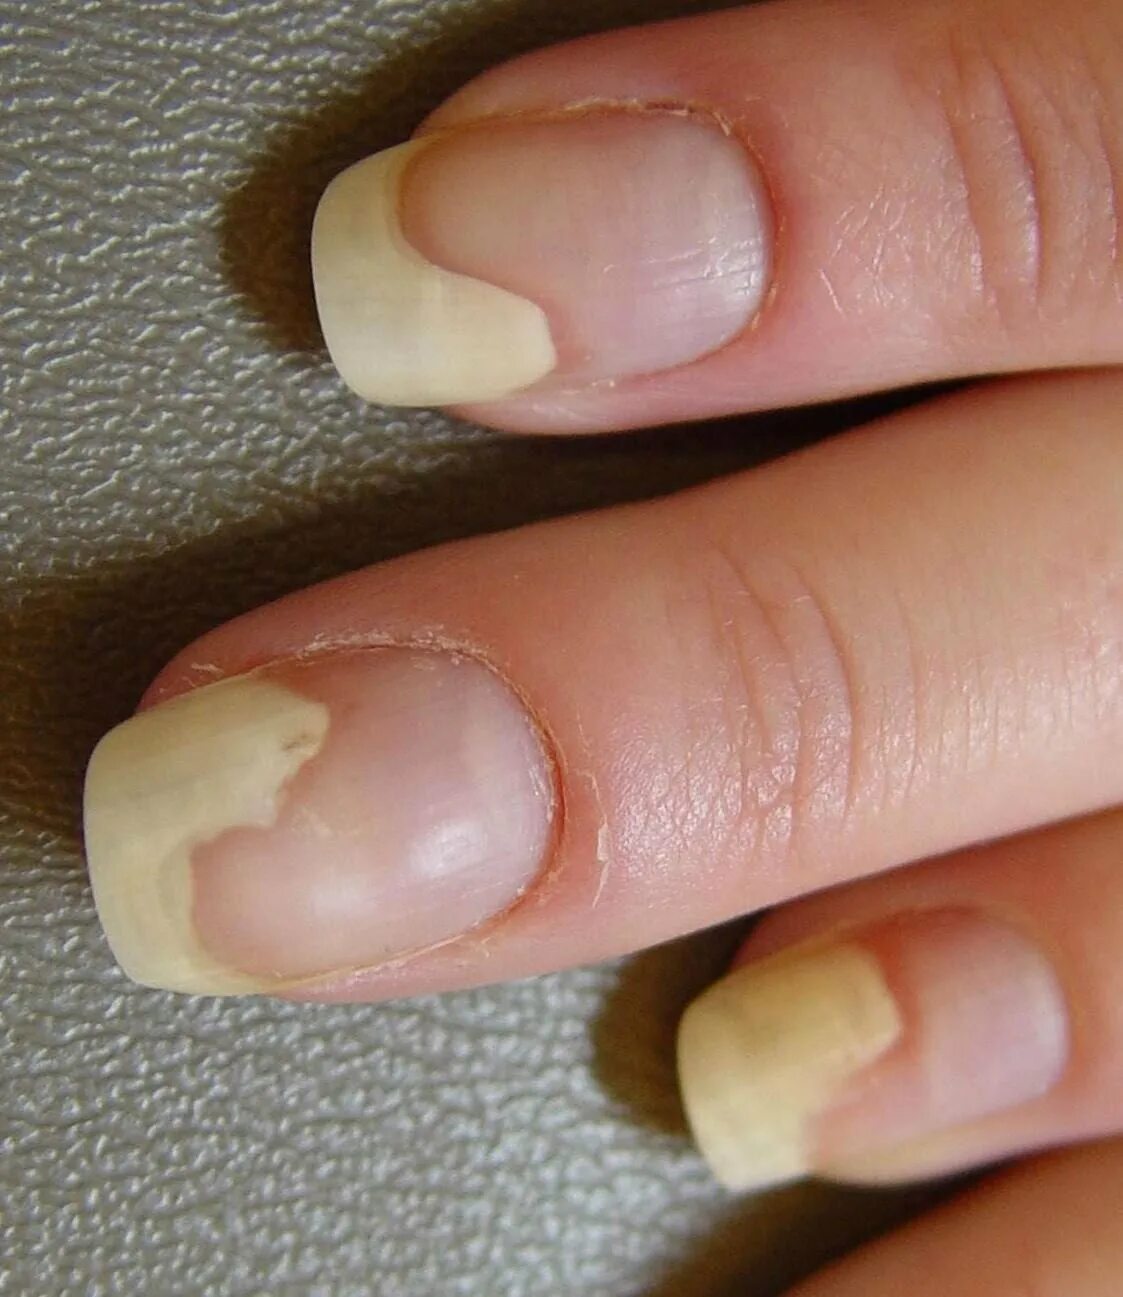 Ониходистрофия - онихолизис.. Онихолизис ногтей онихолизис. Почему ногти гнутся